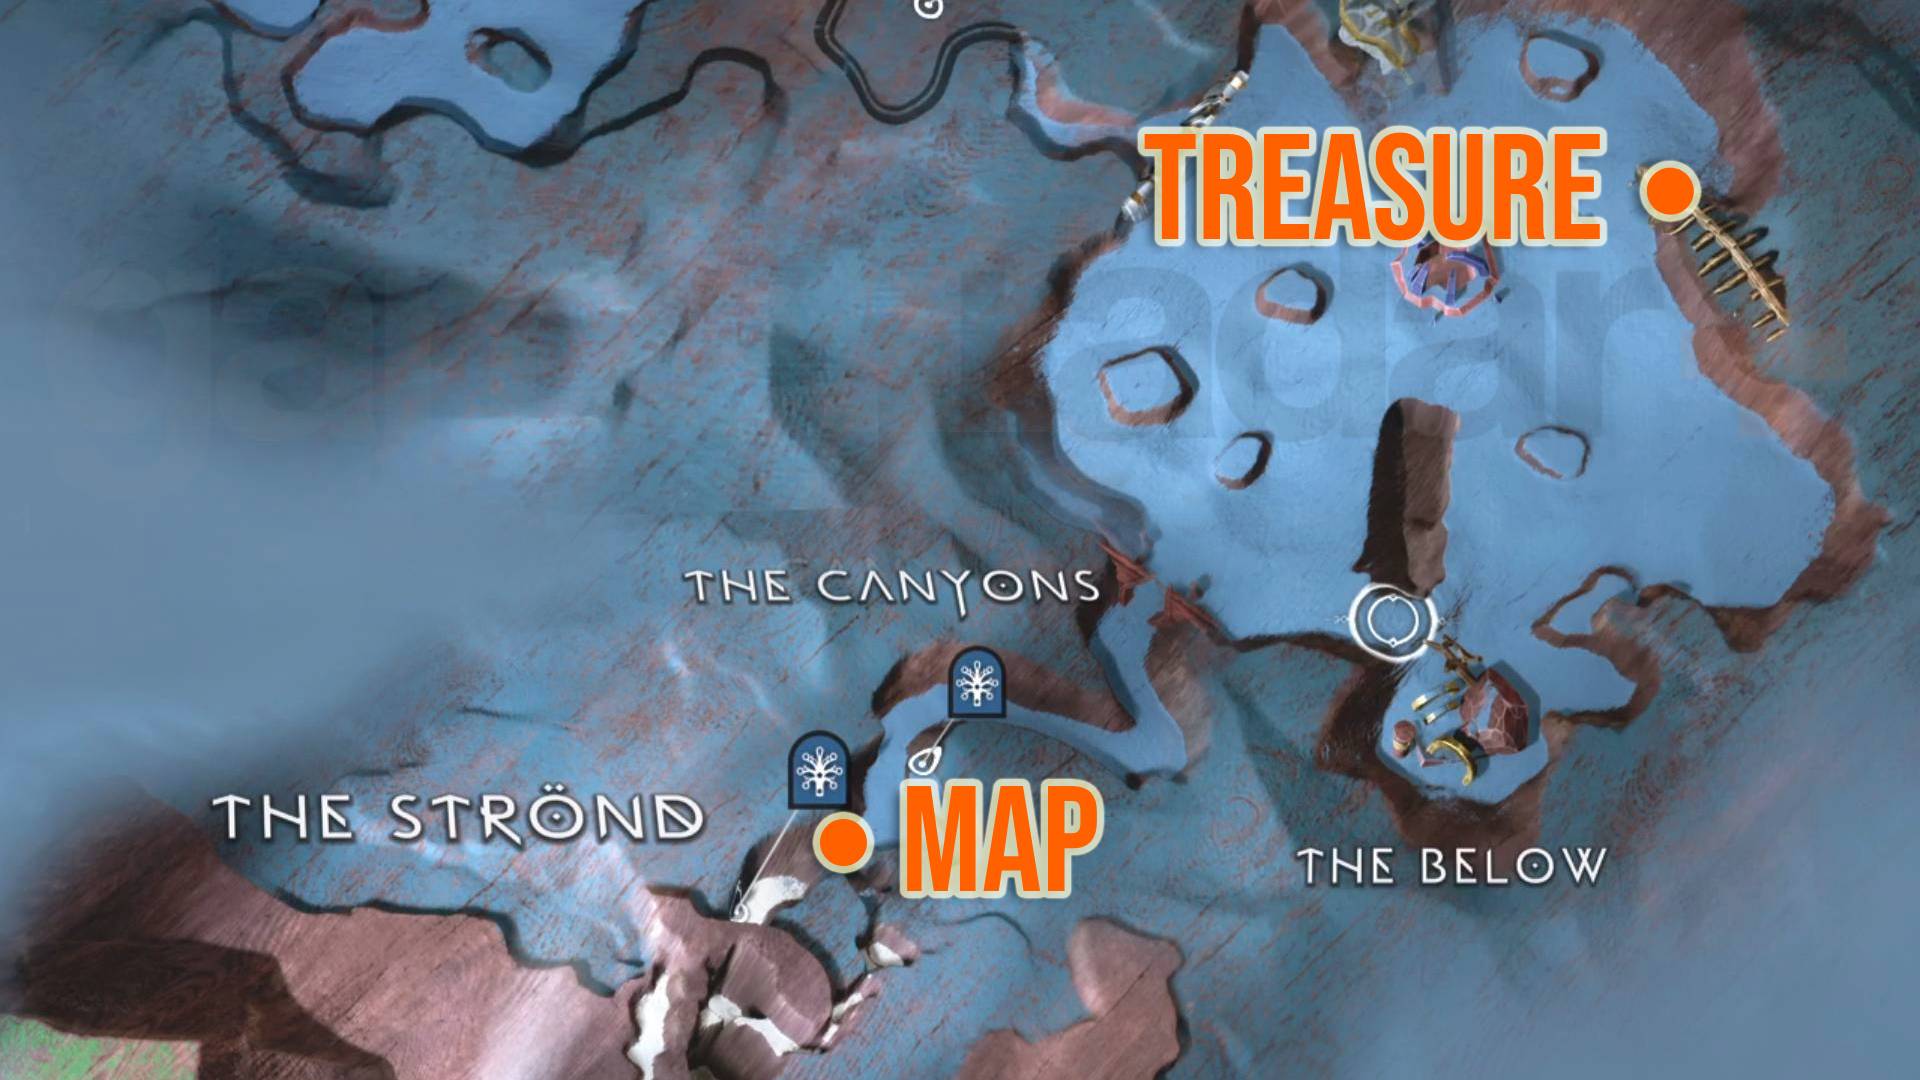 God of War Treasure cartographie les lieux enterrés